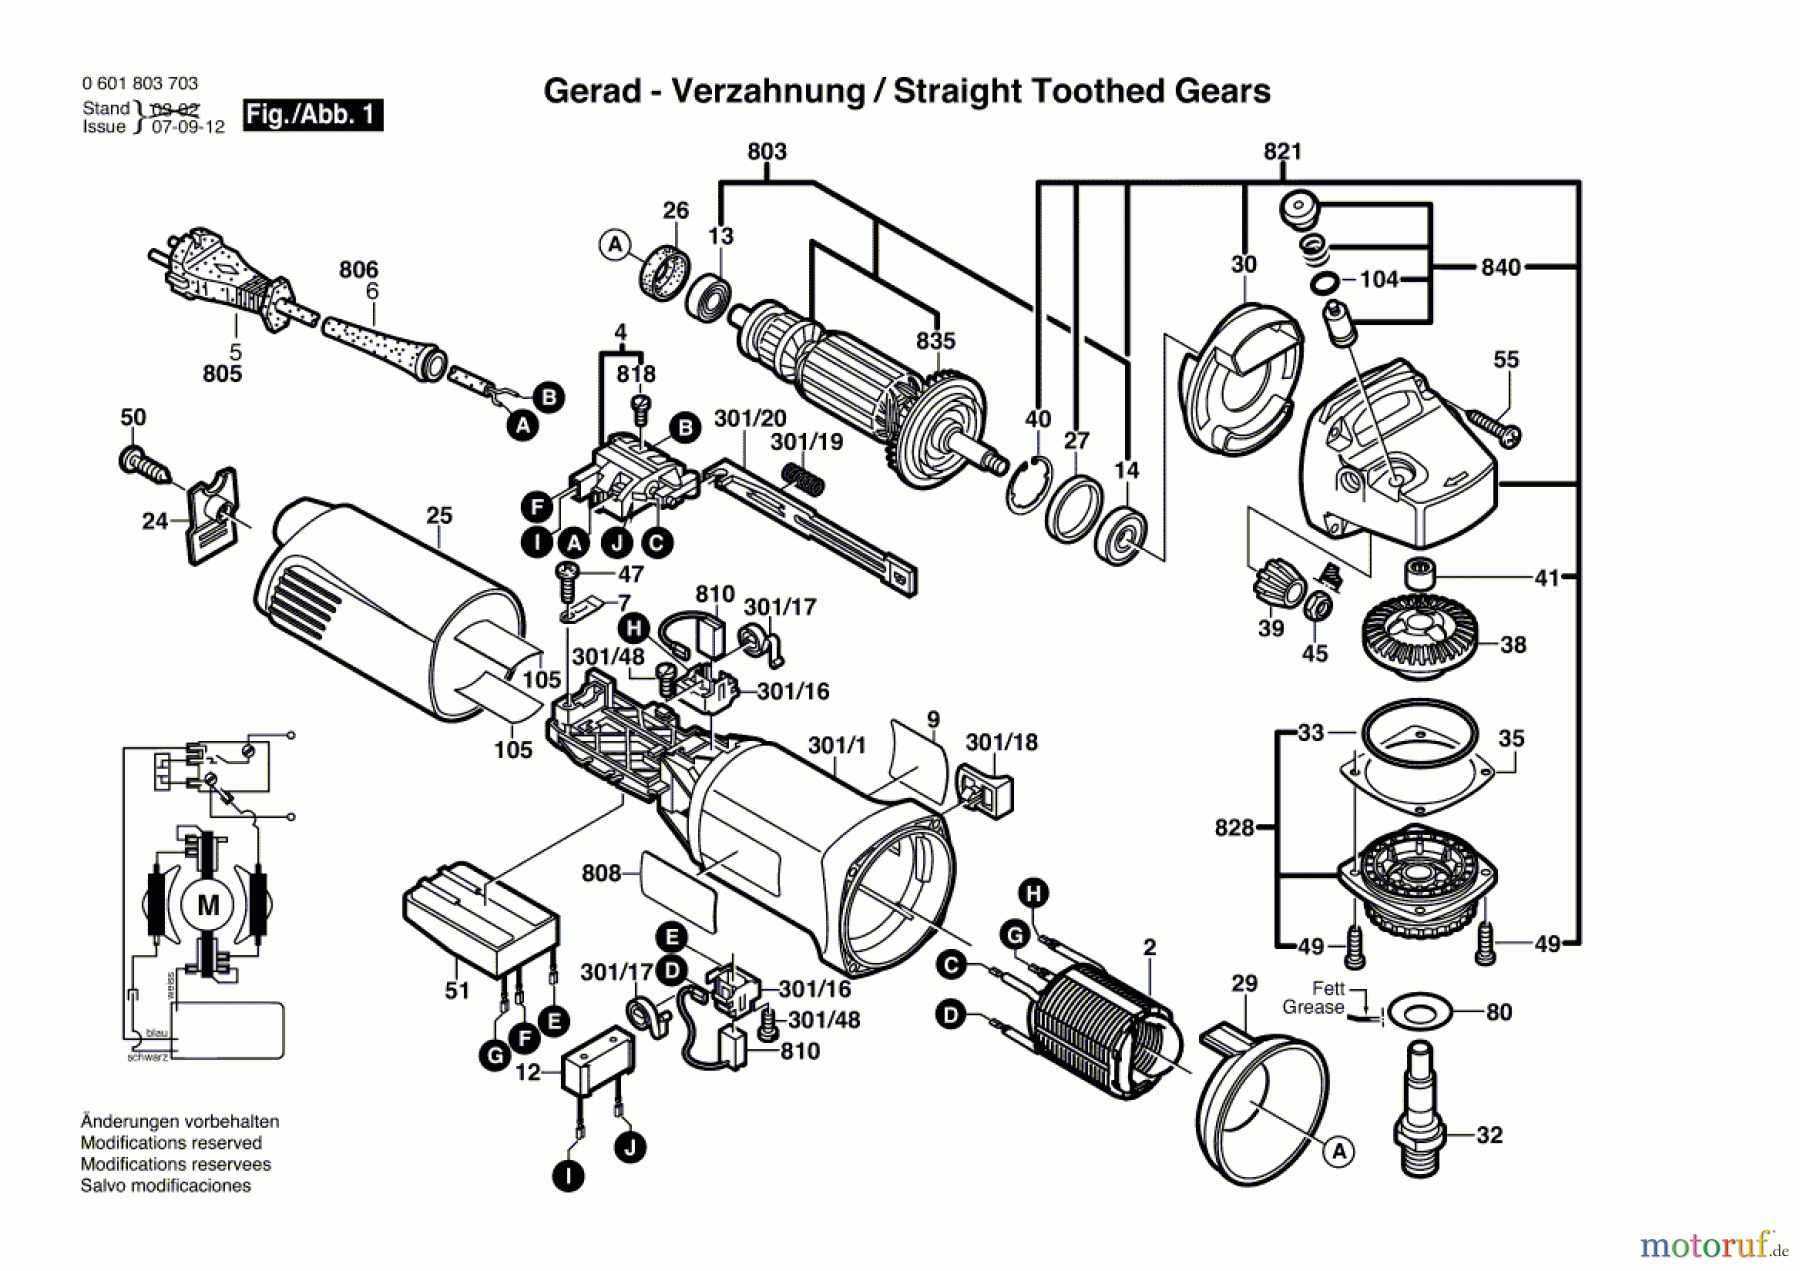  Bosch Werkzeug Winkelschleifer GWS 10-125 CE Seite 1